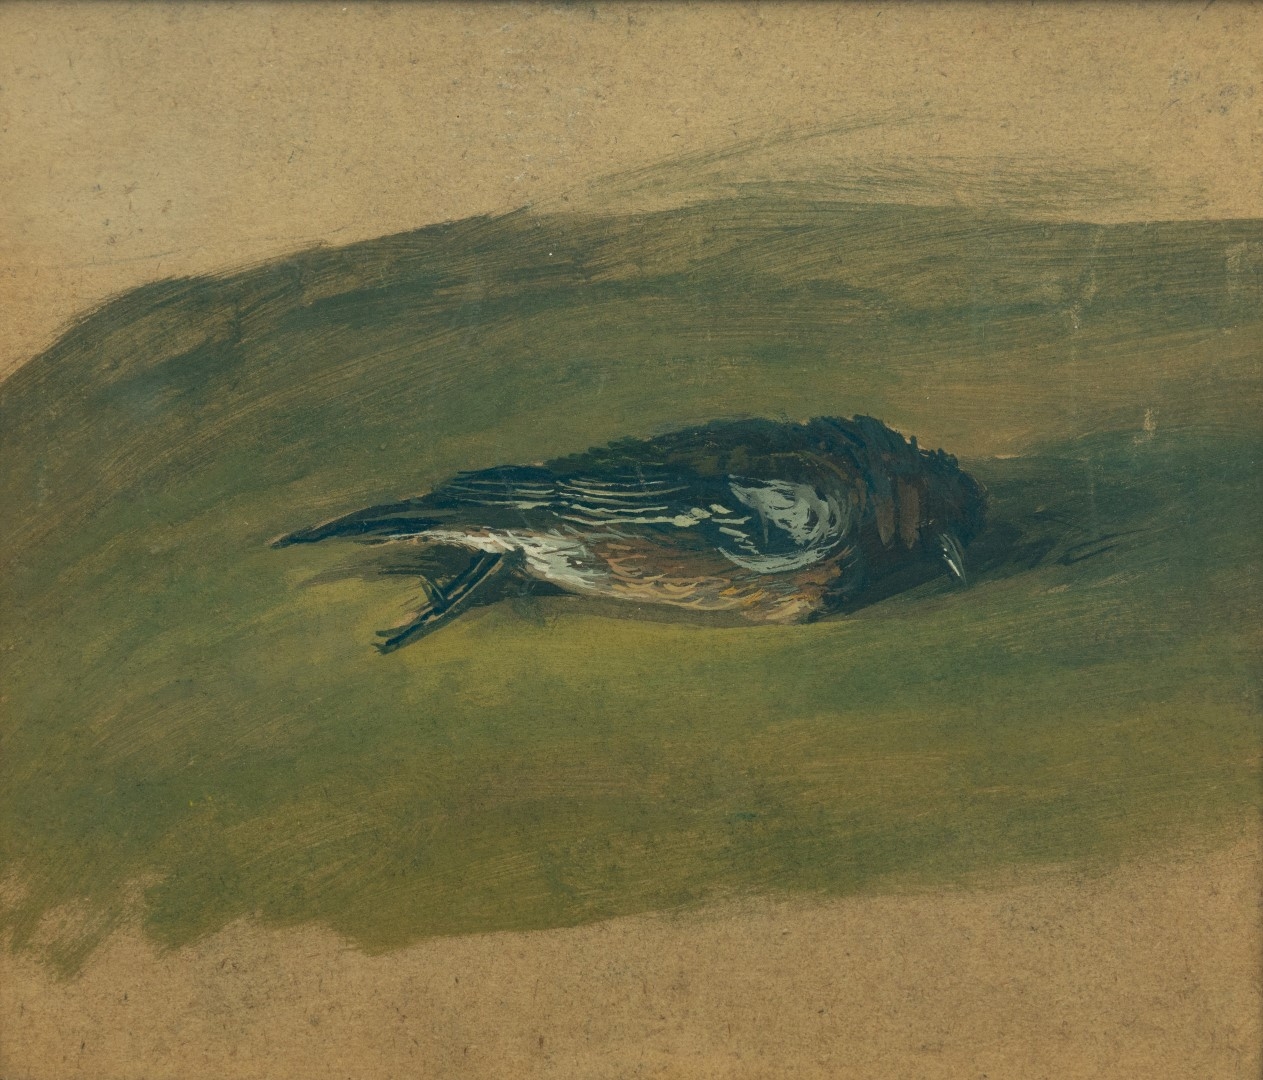 Oiseau mort, sans date, tempera sur carton, 24x28 cm, collection particulière.